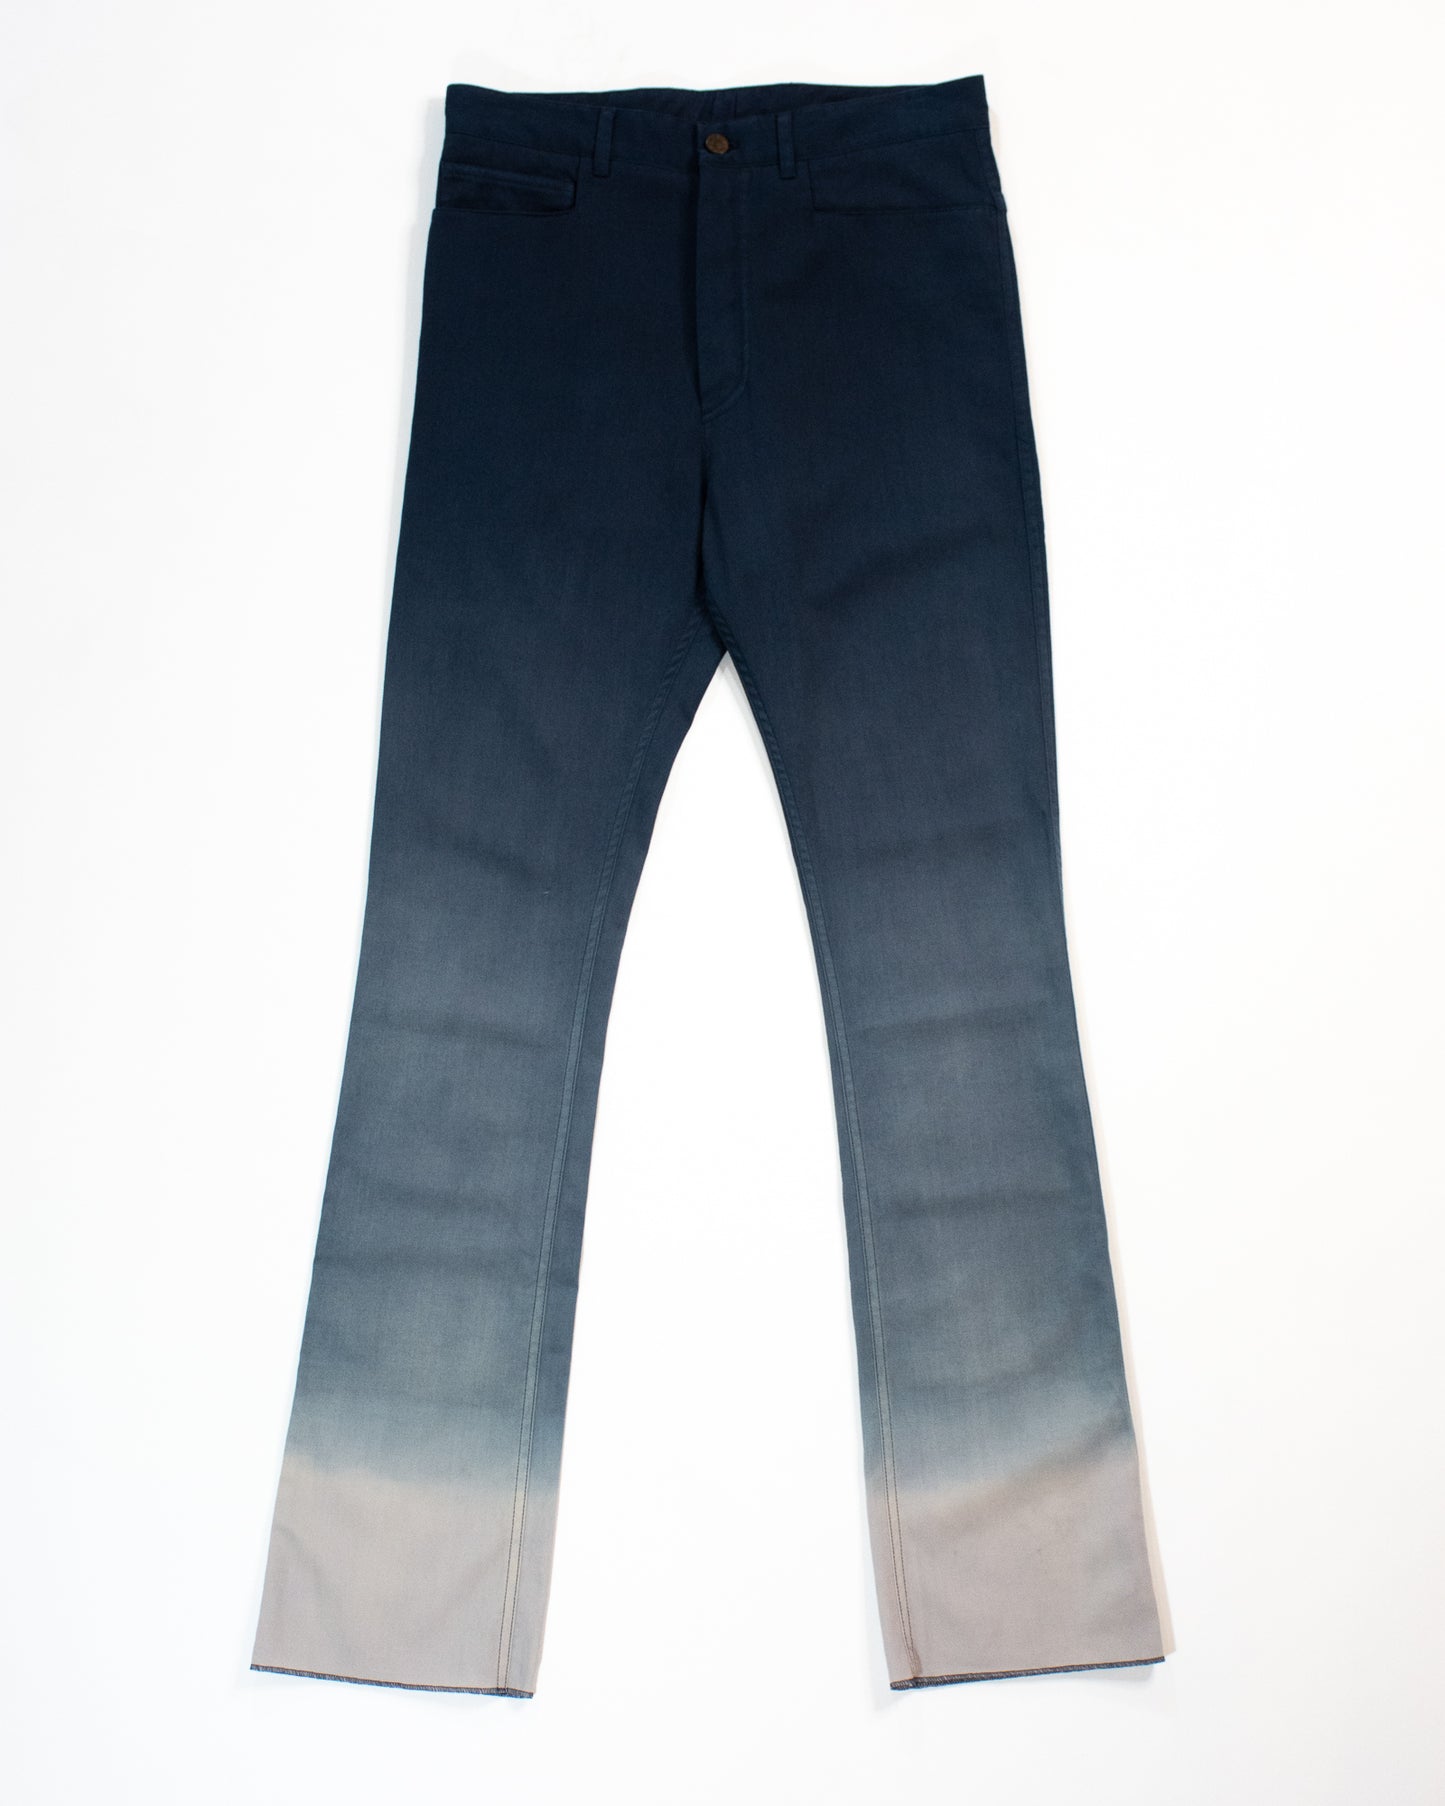 LANVIN Dip Dye 5 Pocket Style Trouser